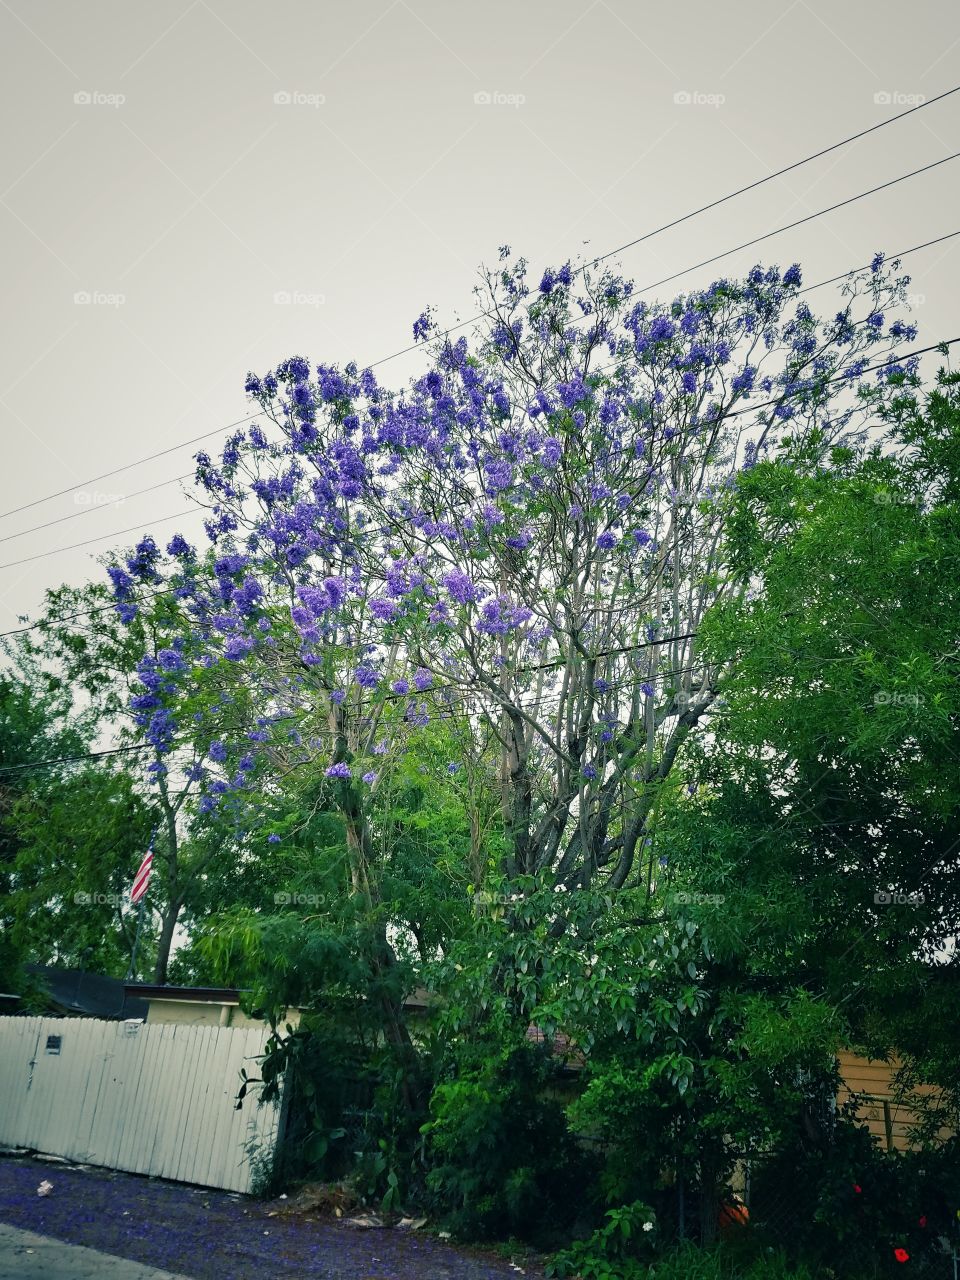 Purple flowering trees